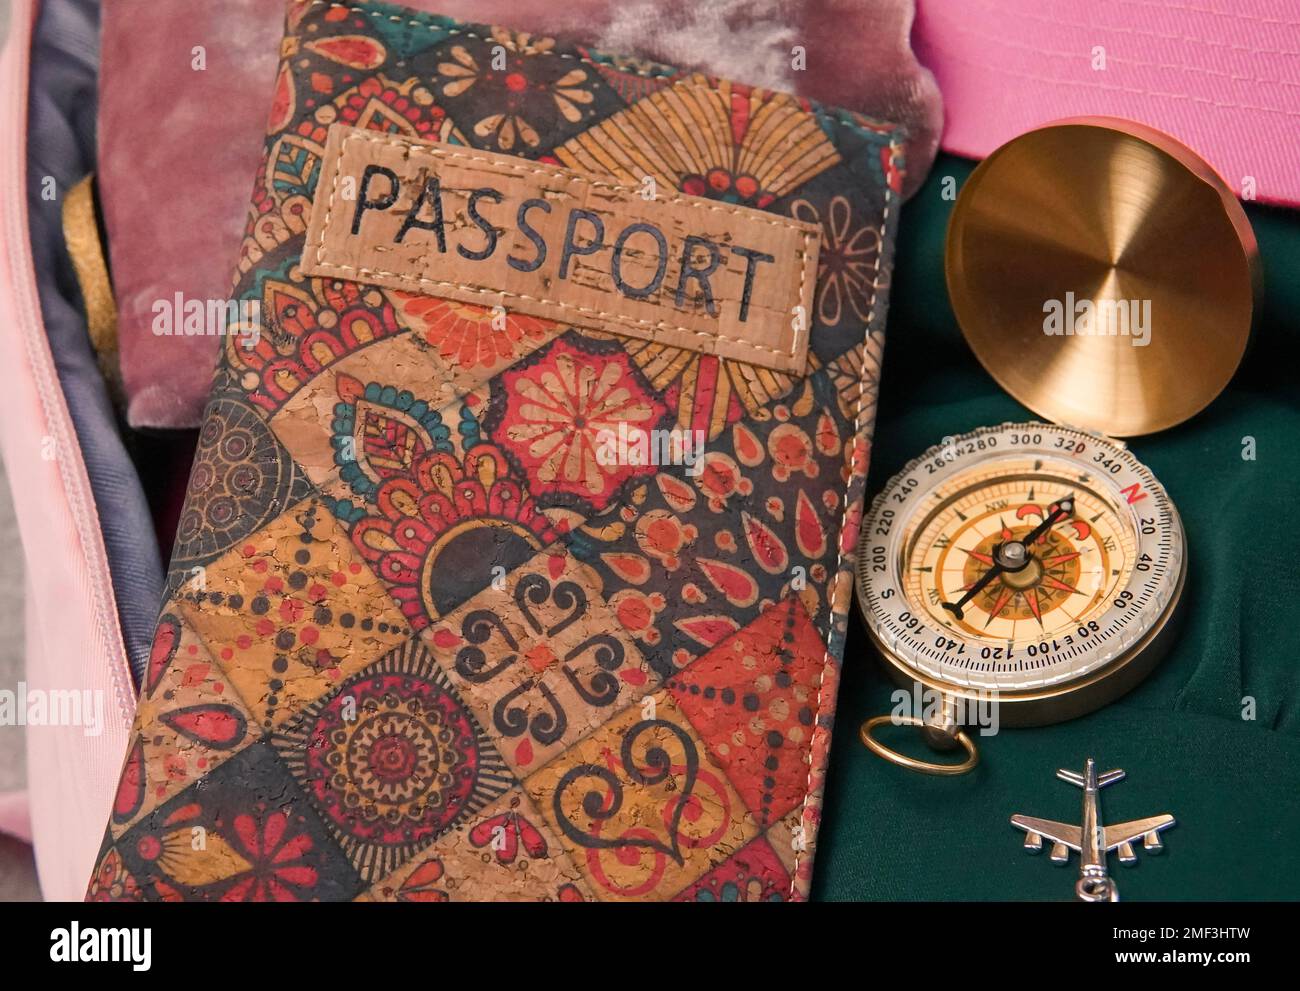 pasaporte, brújula y mochila rosa para viajes turísticos, empacando ropa para el viaje. Foto de alta calidad Foto de stock